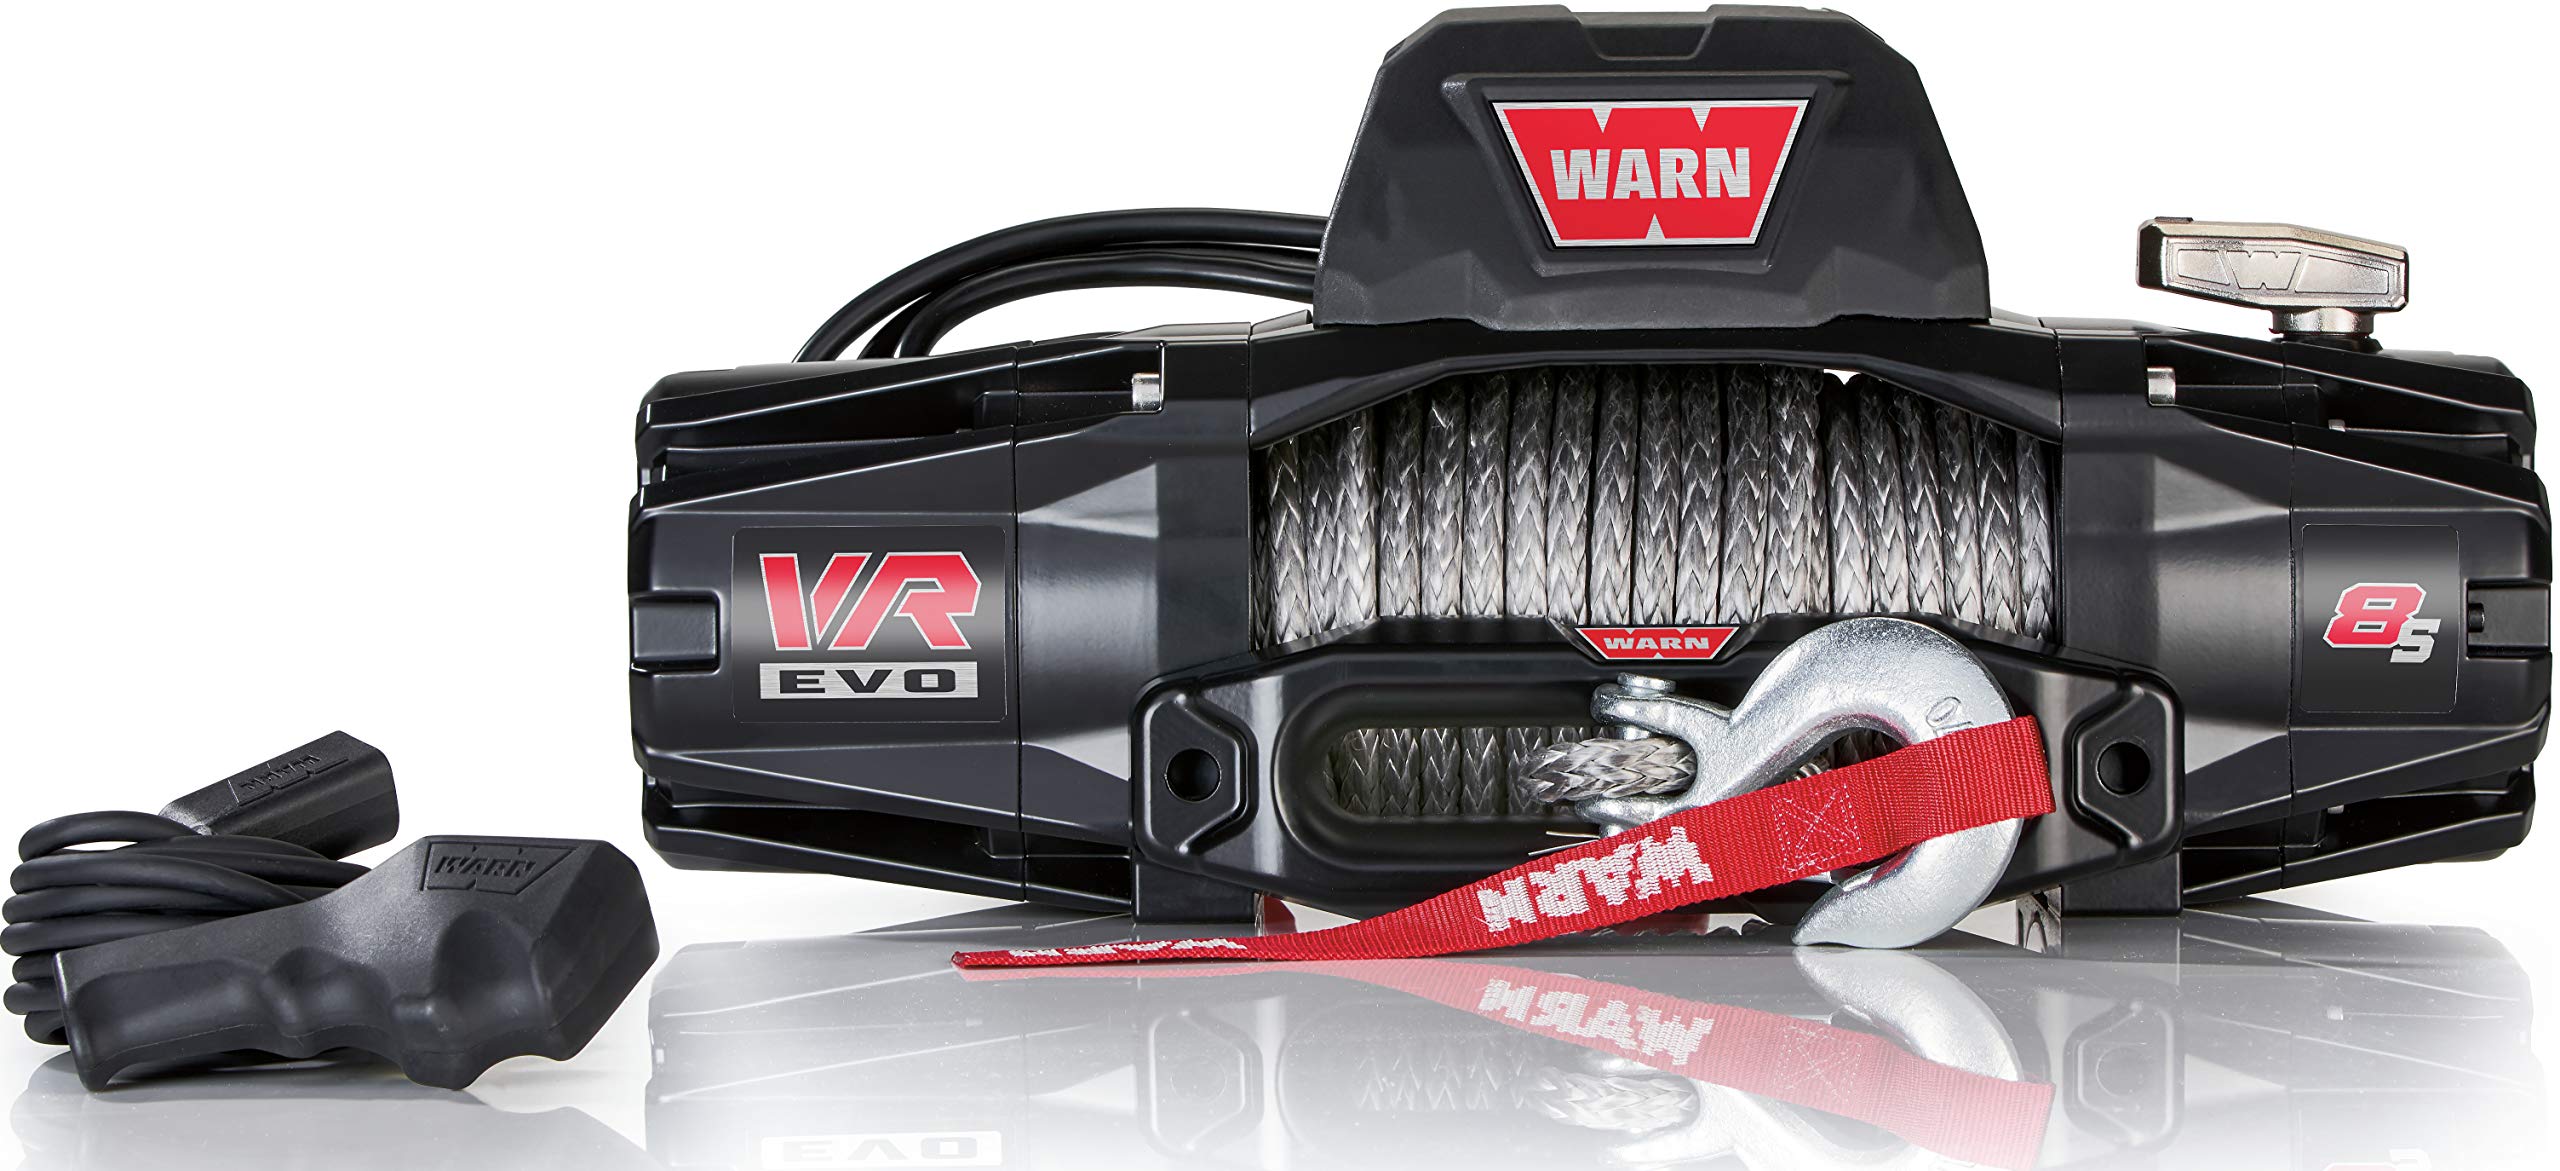 Verricelli WARN VR-EVO 8-S - 3,6 tonnellate - 12V - Sintetico